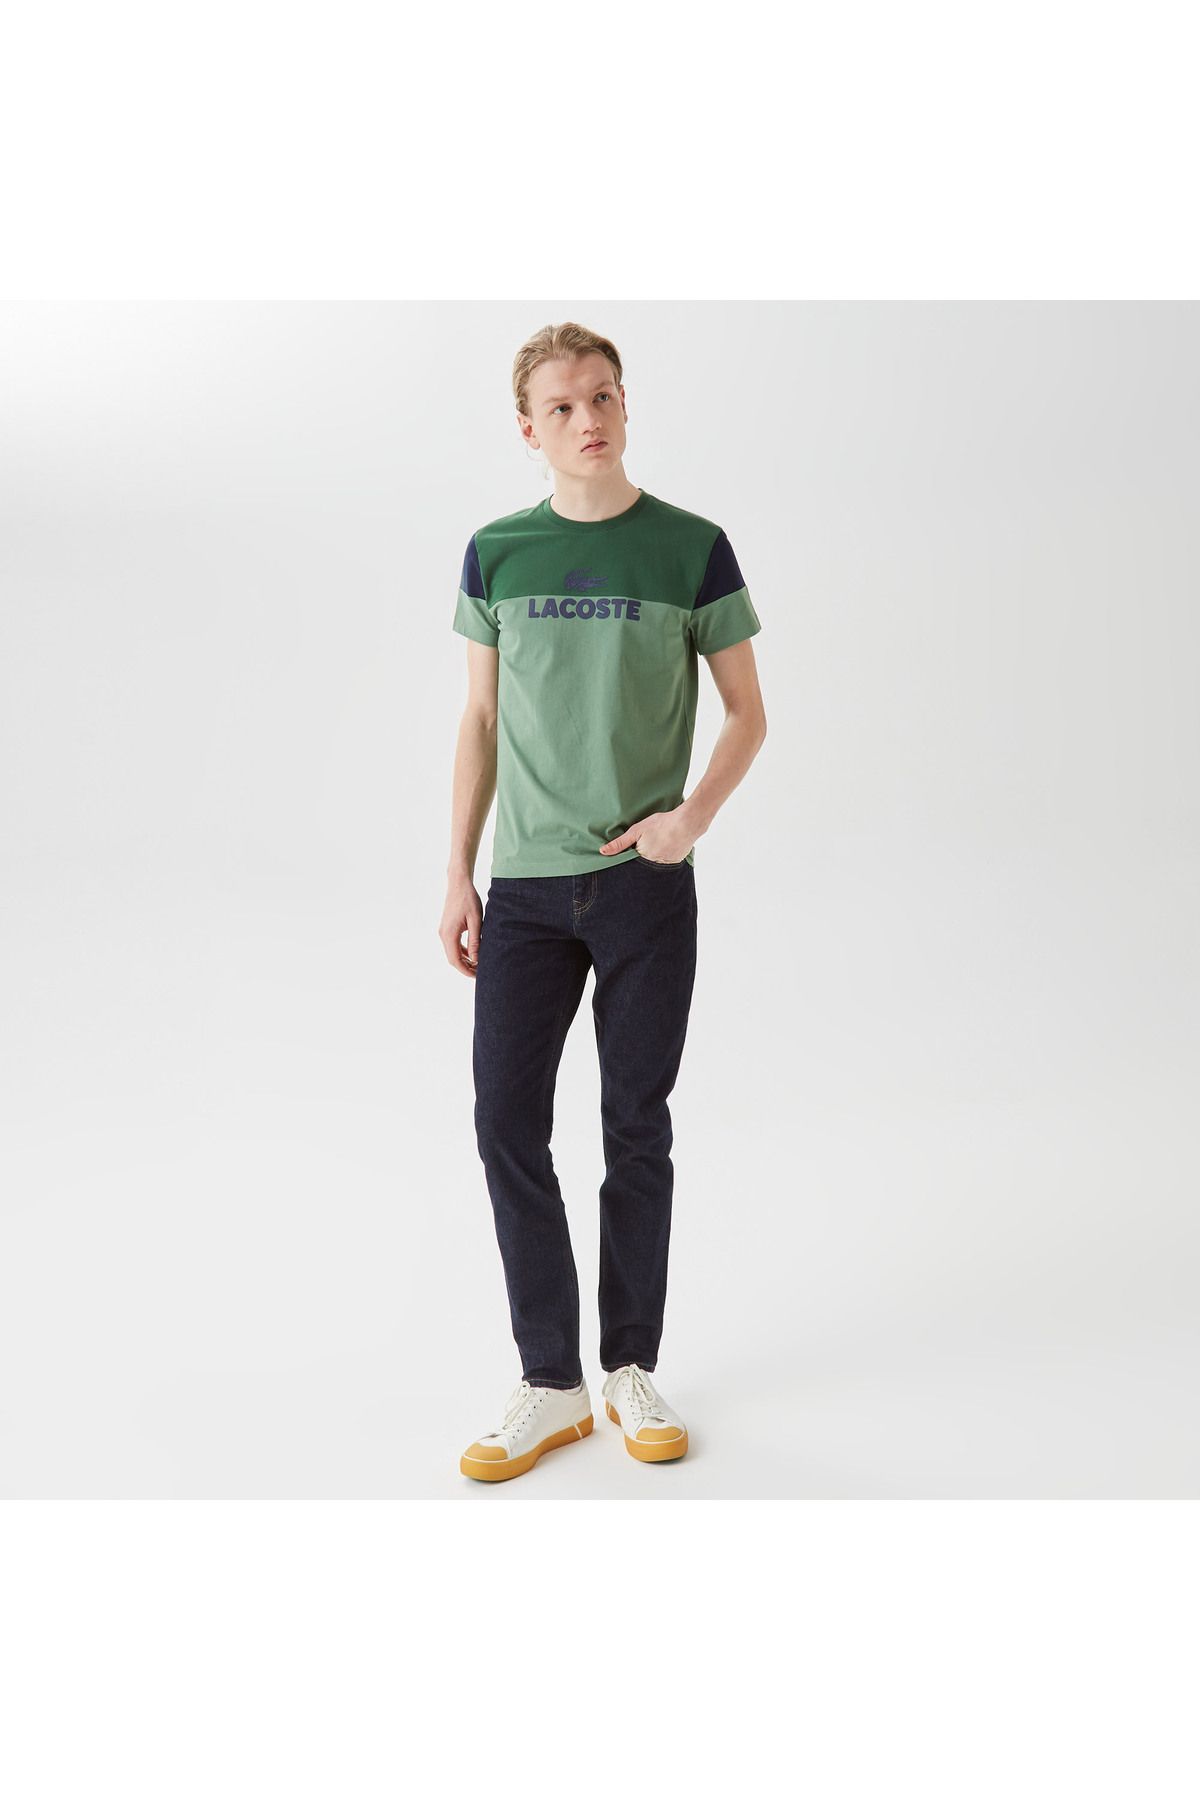 Lacoste Erkek Slim Fit Bisiklet Yaka Renk Bloklu Yeşil T-shirt